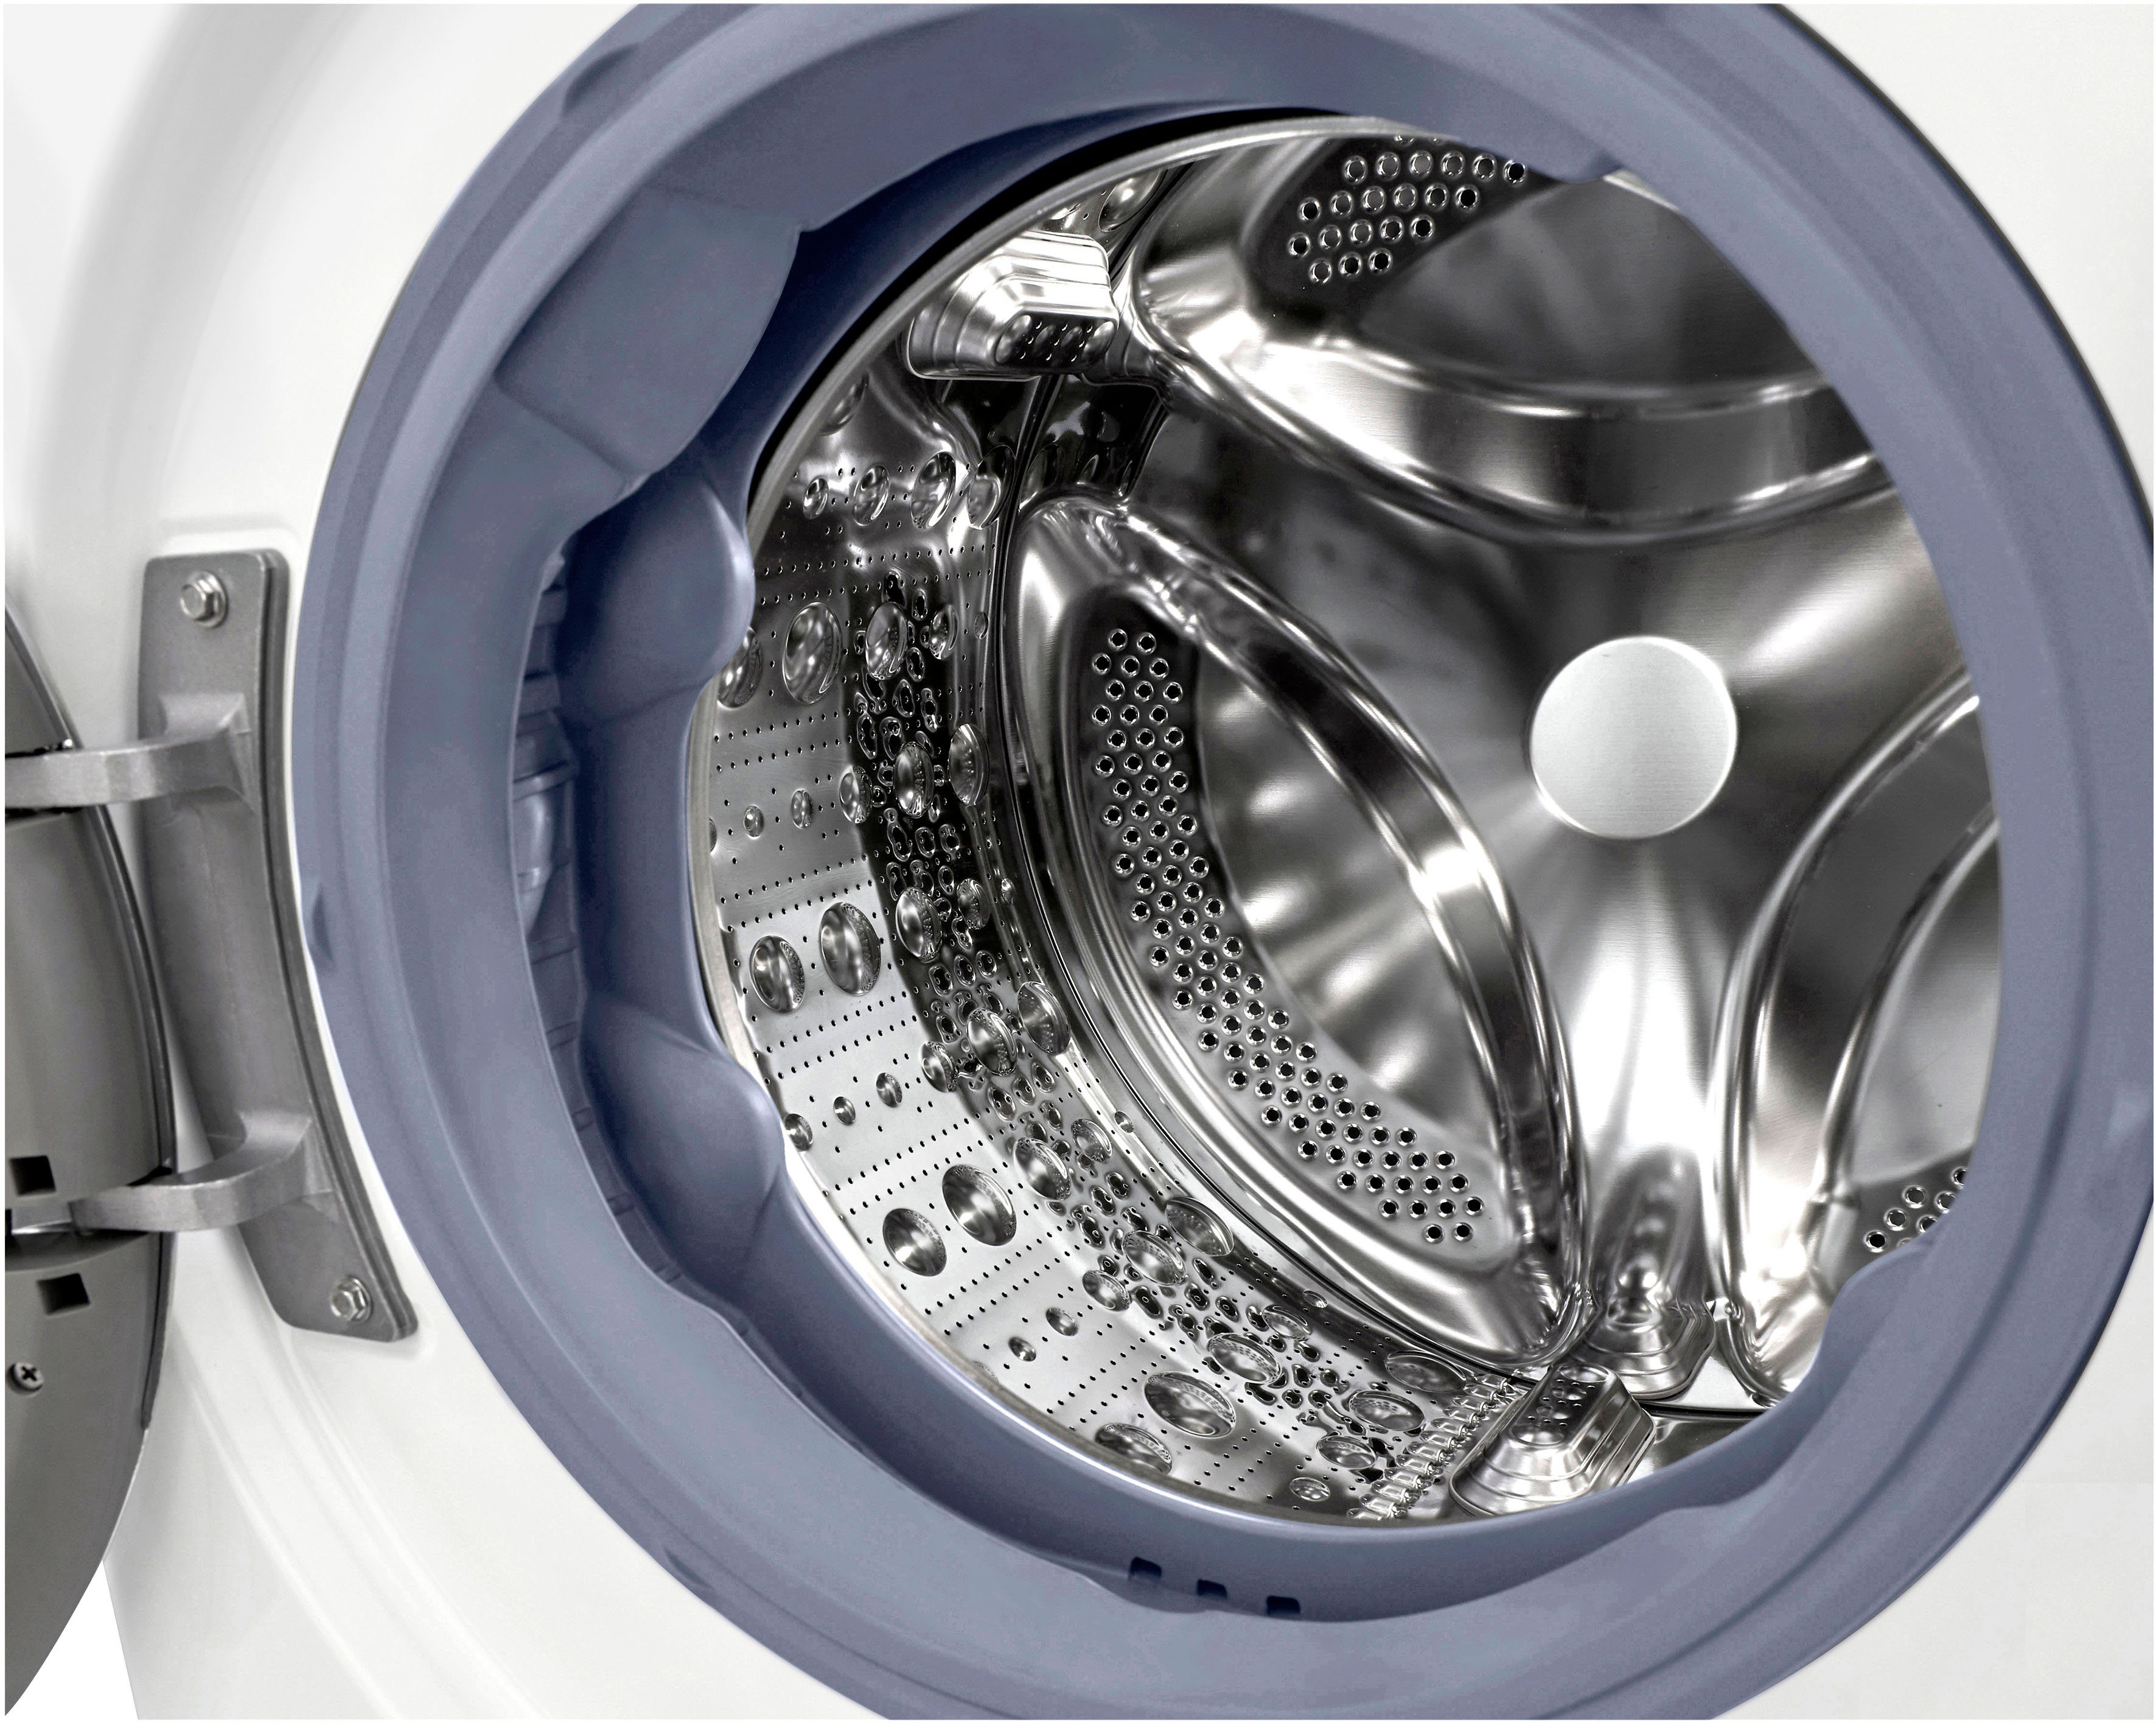 LG kg, - 1600 Minuten F6WV709P1, TurboWash® Waschen in 39 nur Waschmaschine U/min, 9